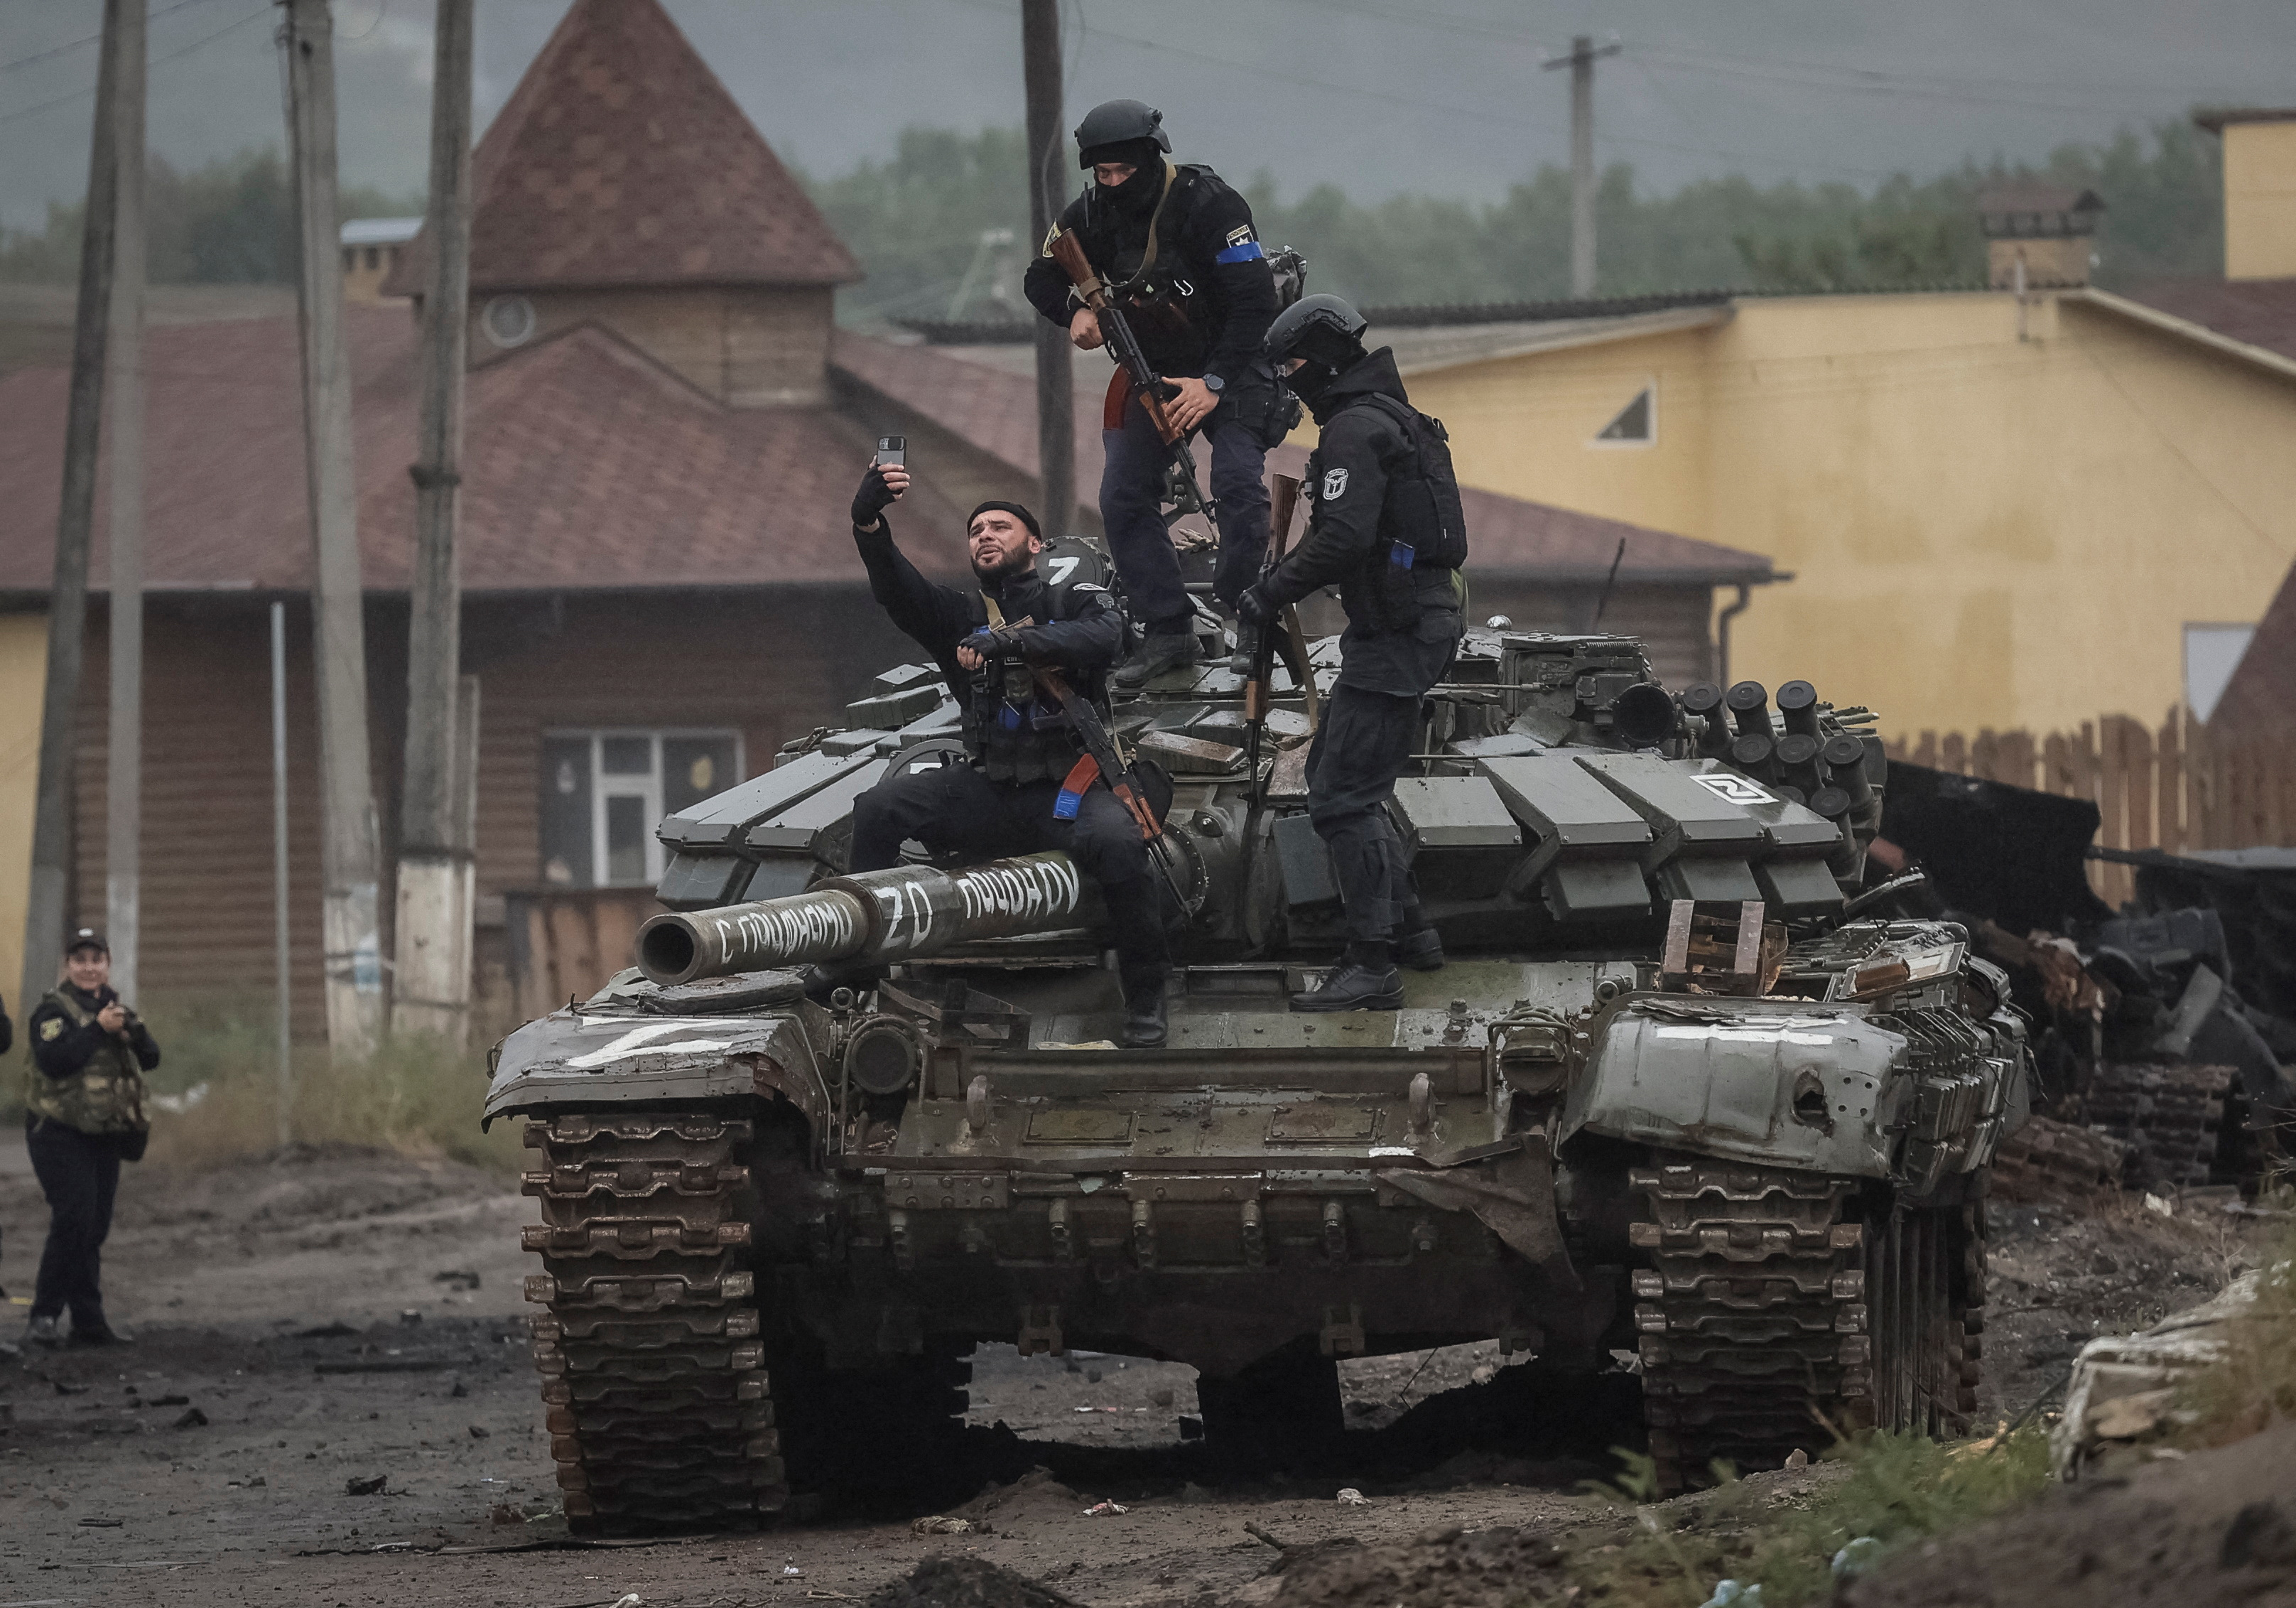 Tình trạng căng thẳng giữa Ukraine và Nga đang lan rộng, với những tấm chân dung về xe tăng được thu được hôm nay. Hàng trăm xe tăng đang chờ đợi sẵn sàng nhận lệnh xông về chiến trường. Chắc chắn rằng, bạn sẽ không thể rời mắt khỏi hình ảnh này!